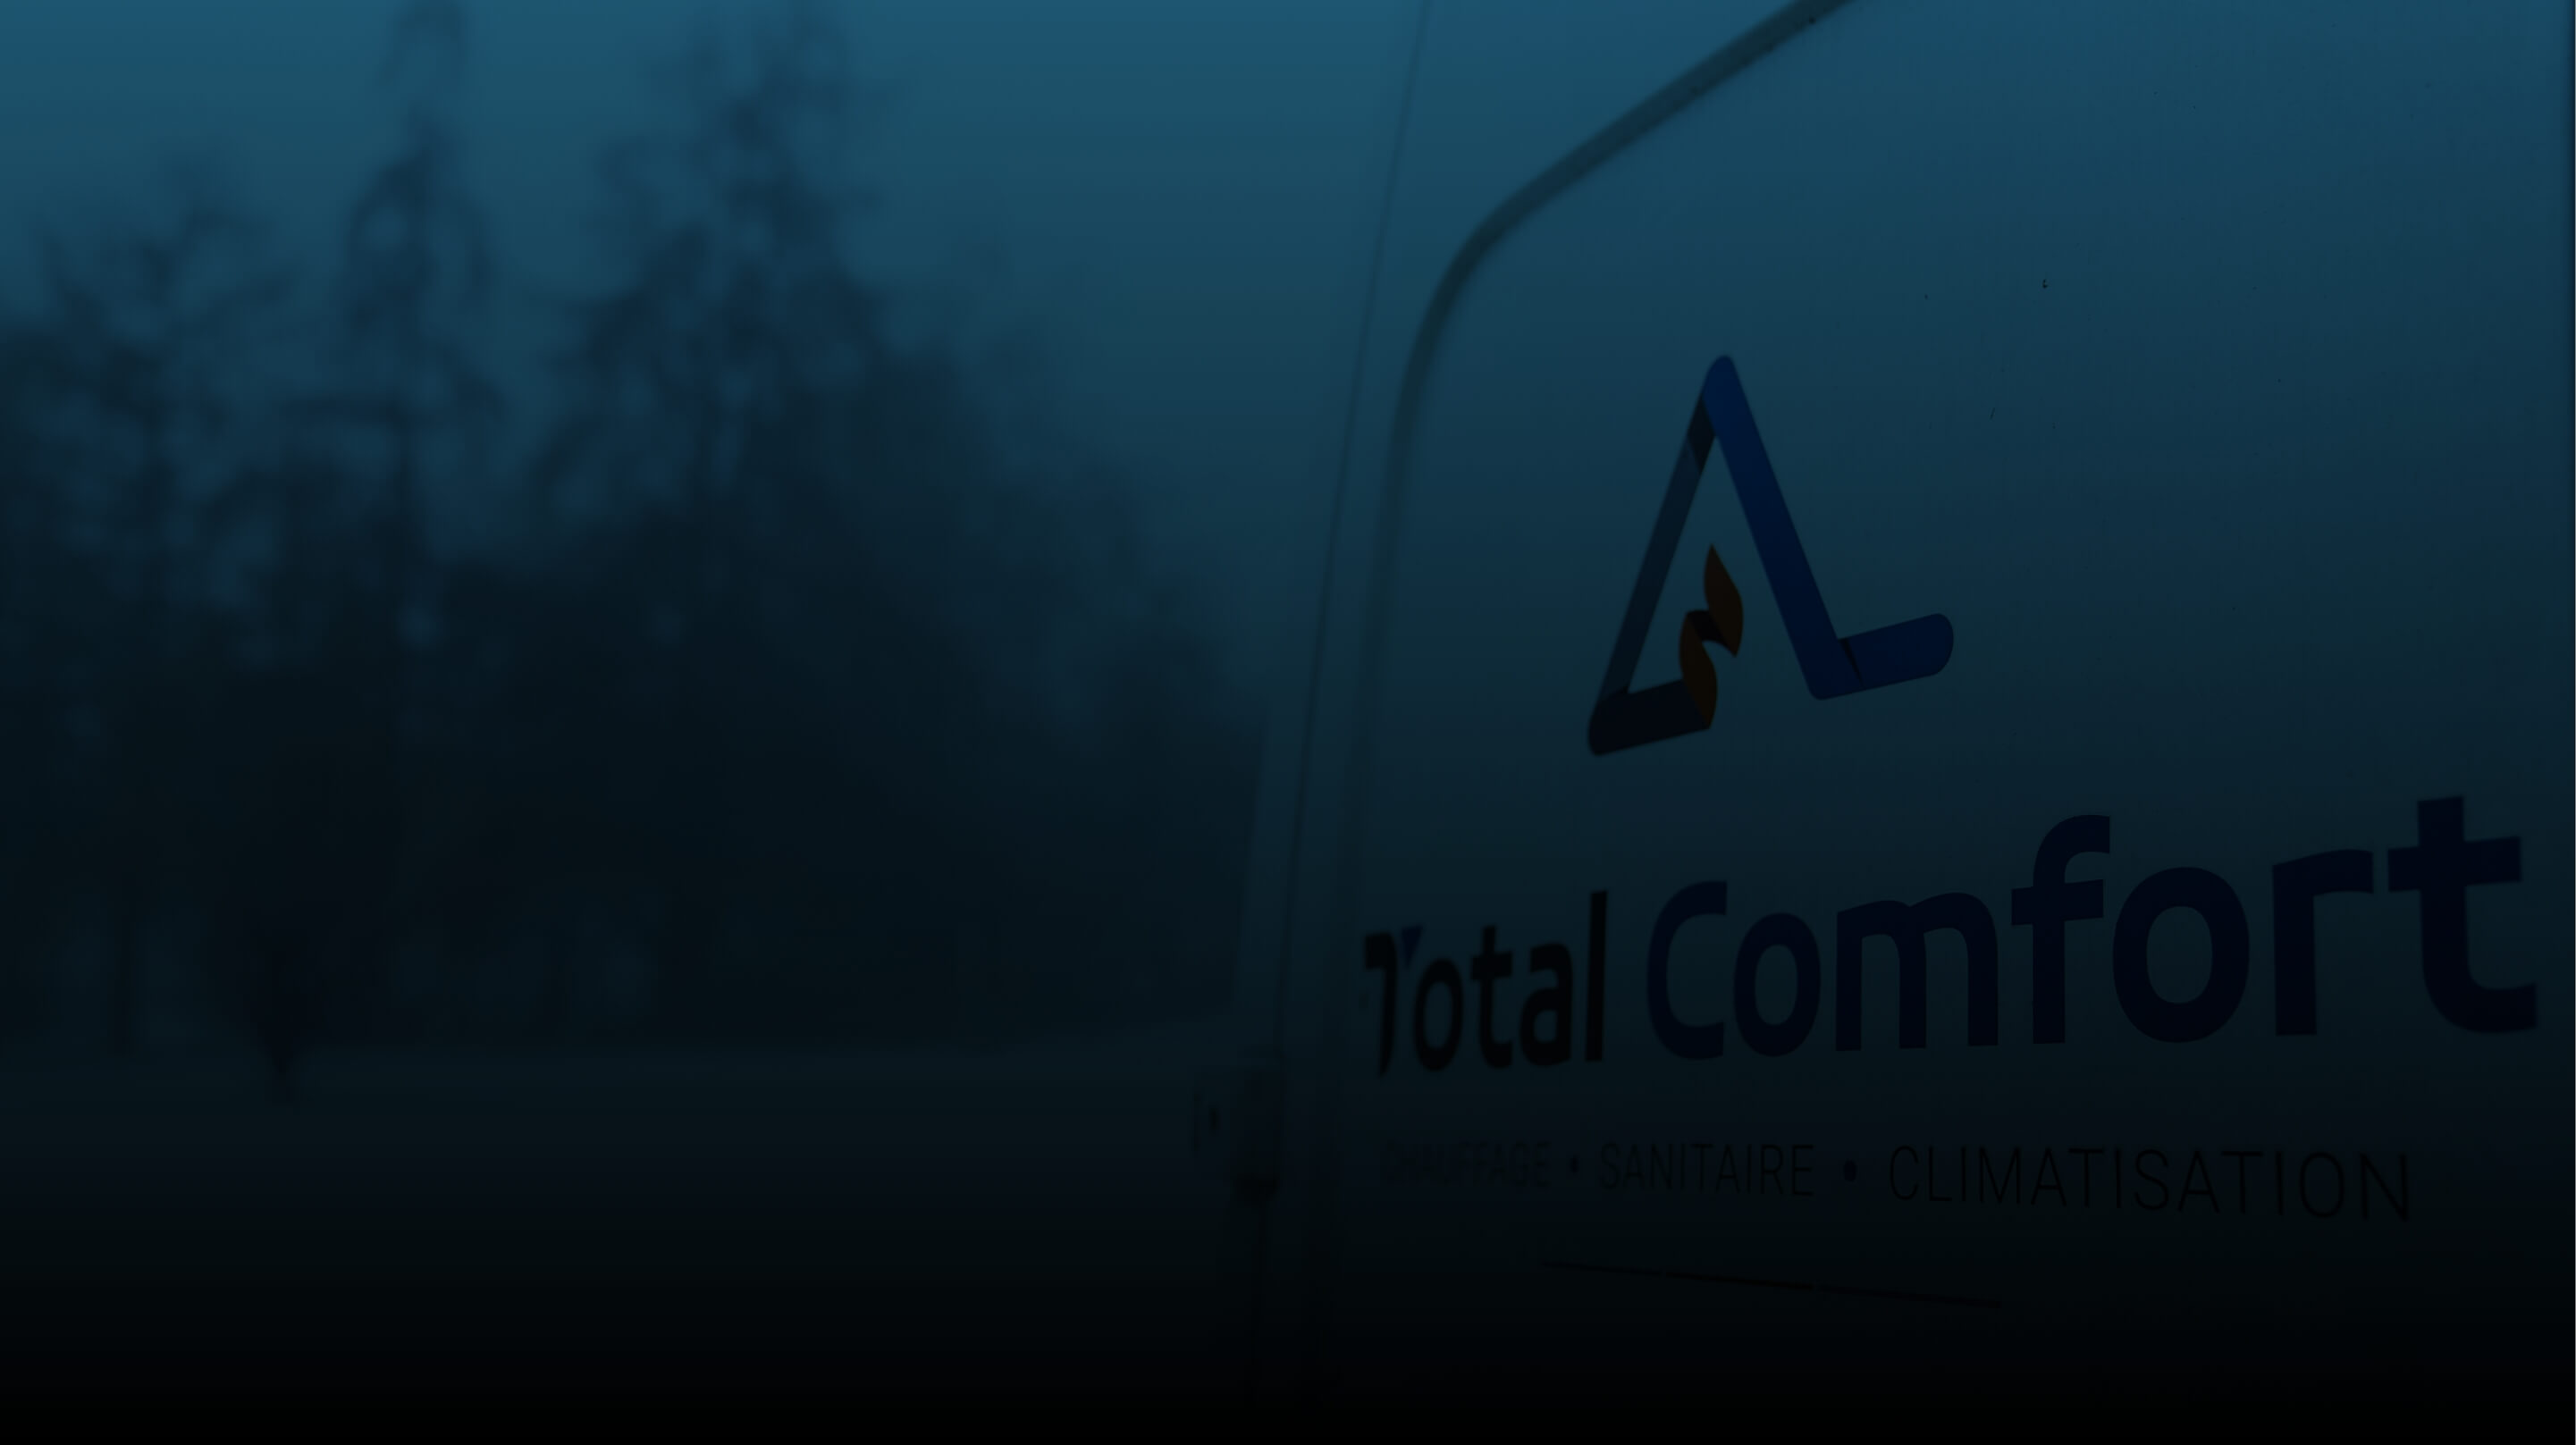  Total Comfort est un acteur clef dans le secteur du chauffage, de la climatisation et des sanitaires - photo 1